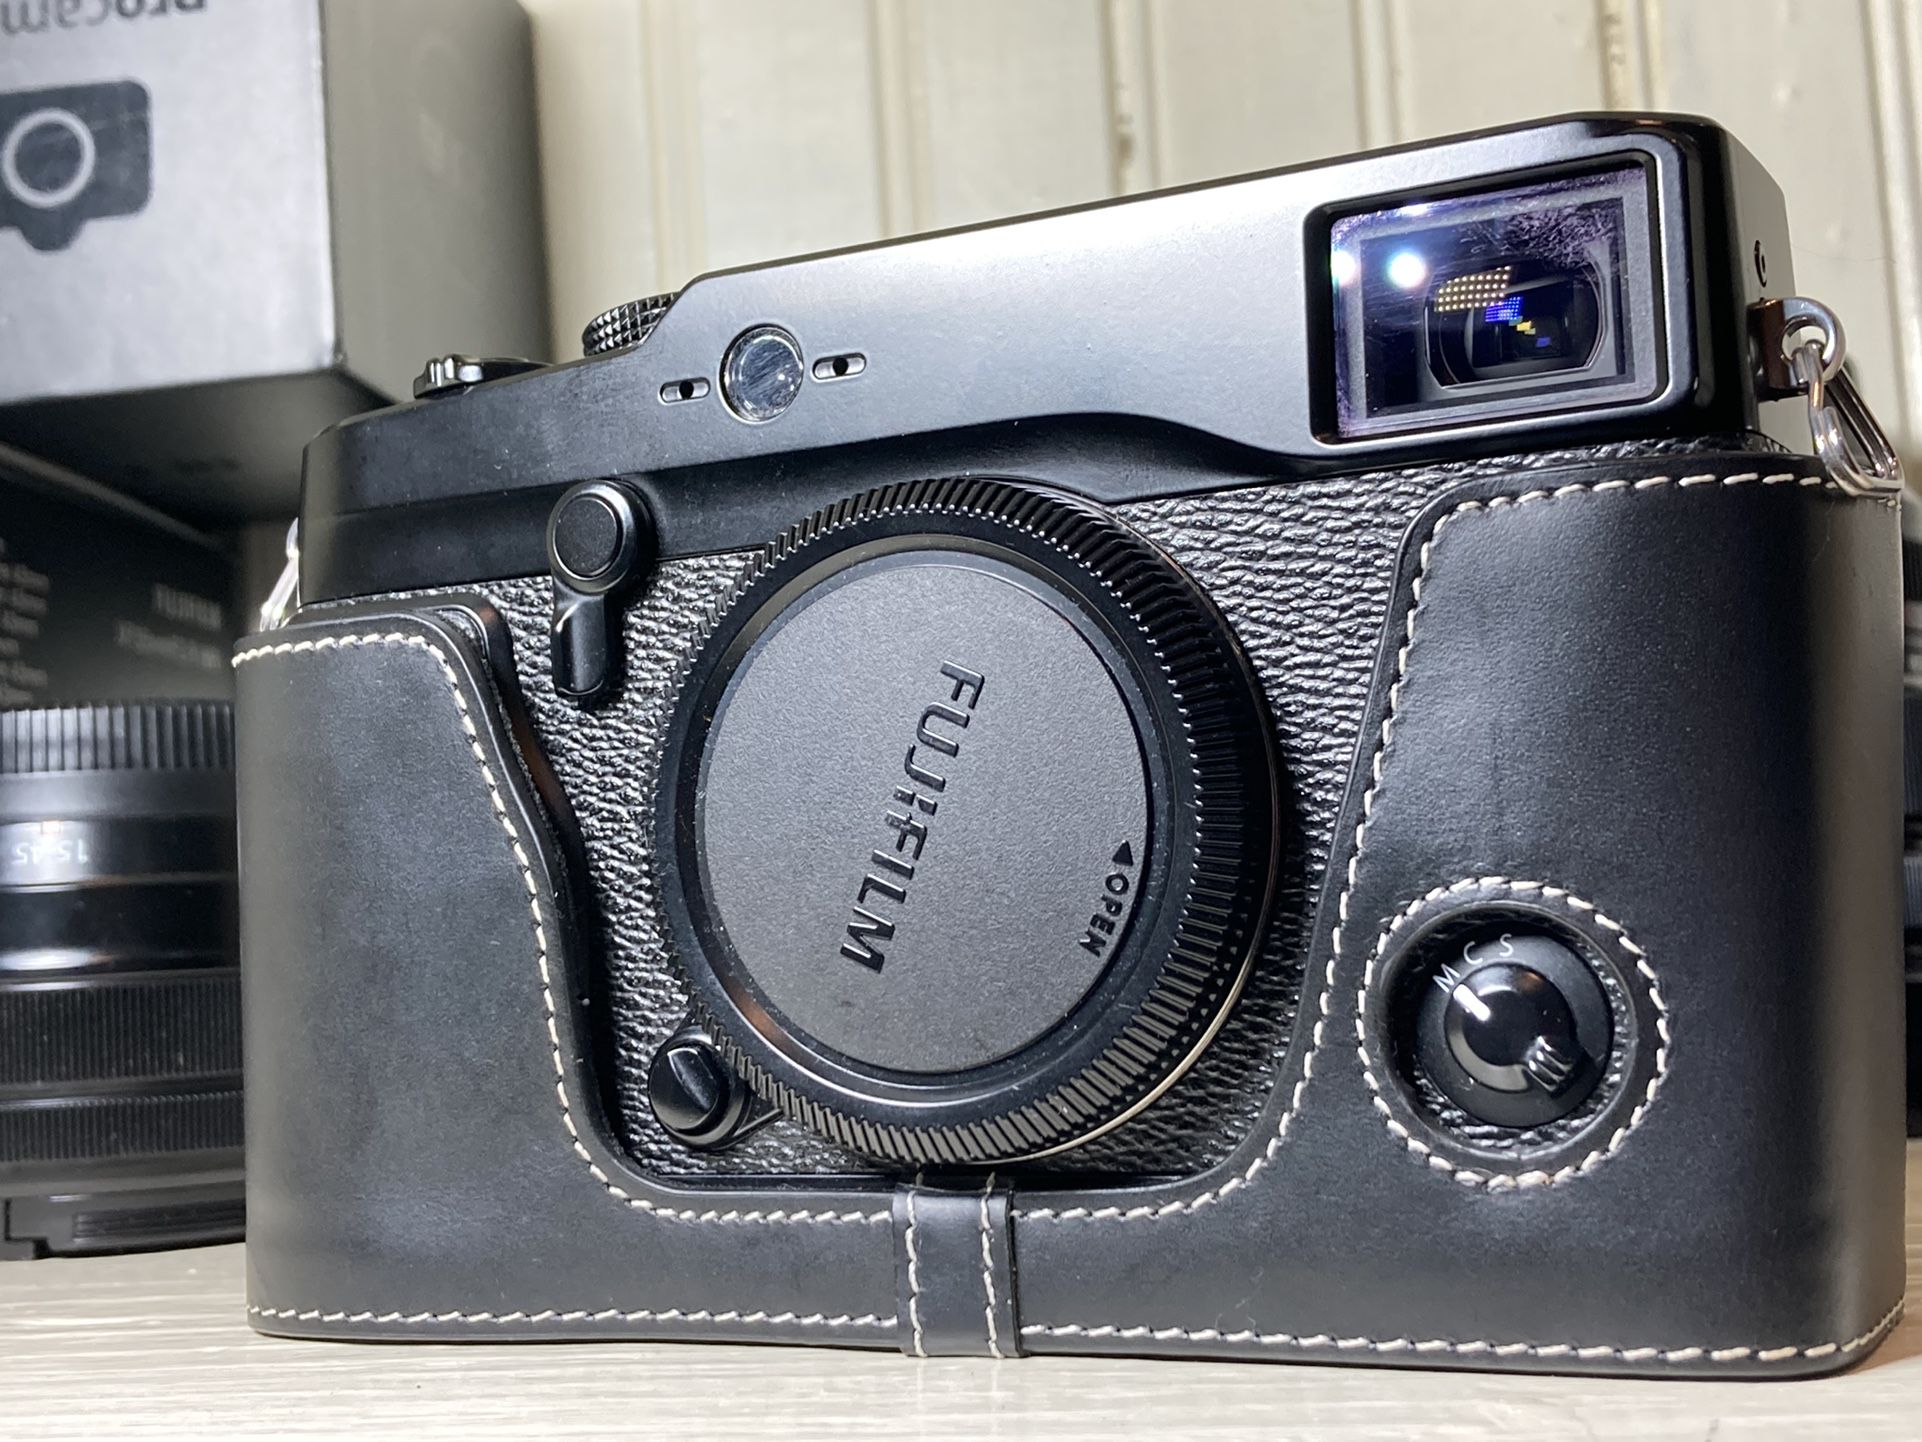 Fujifilm XPro 1 Digital Camera Body